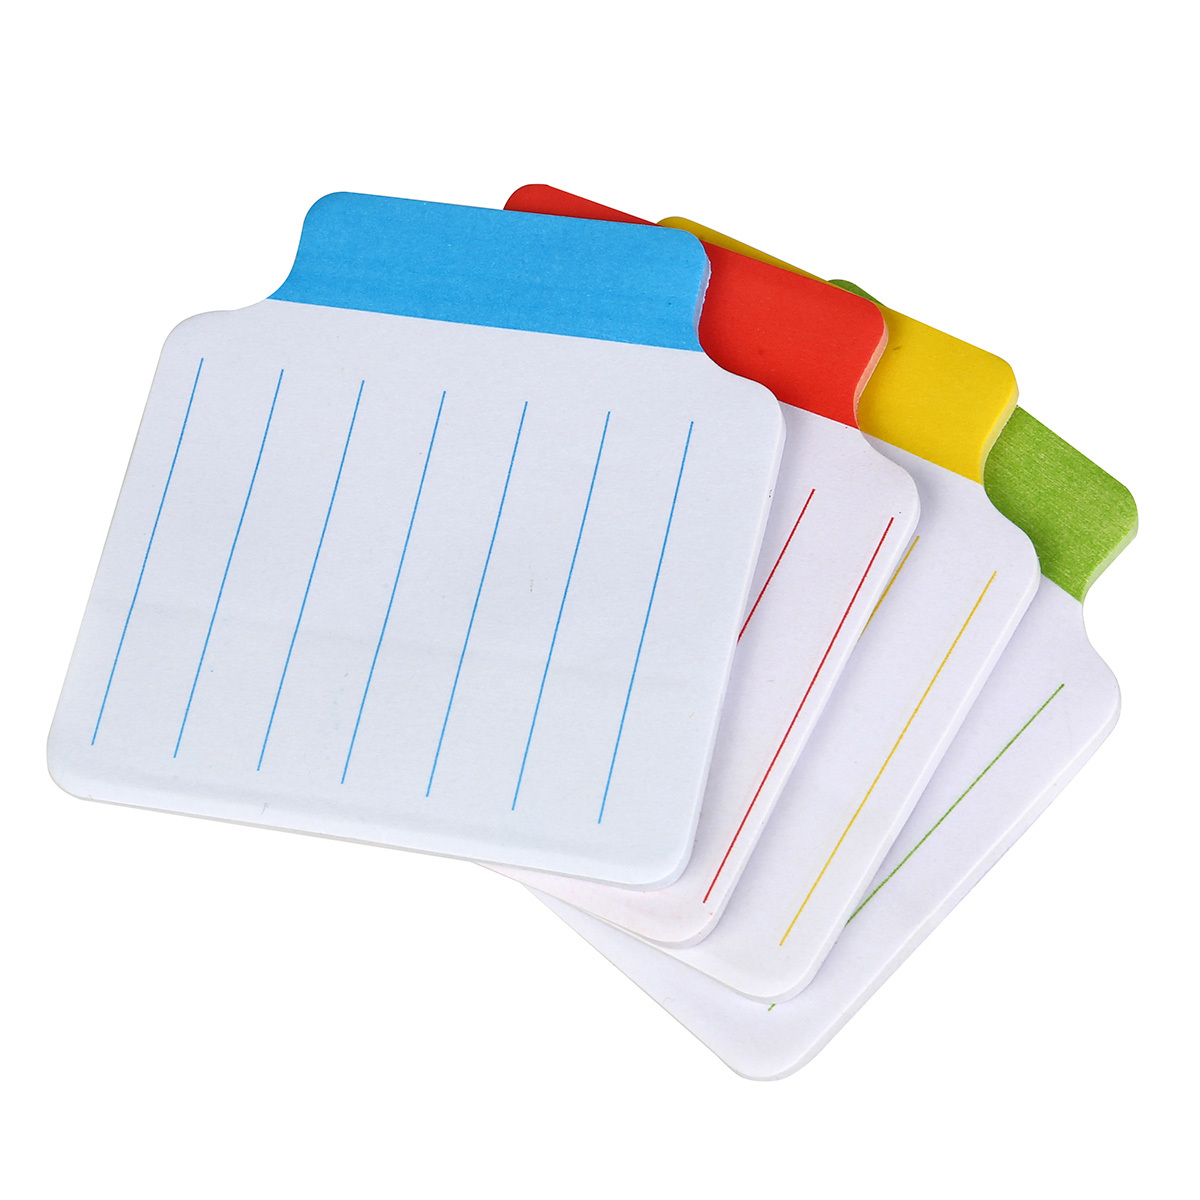 Banderitas Adhesivas Office Depot Notes / Colores surtidos / 6.8 x 7.2 cm